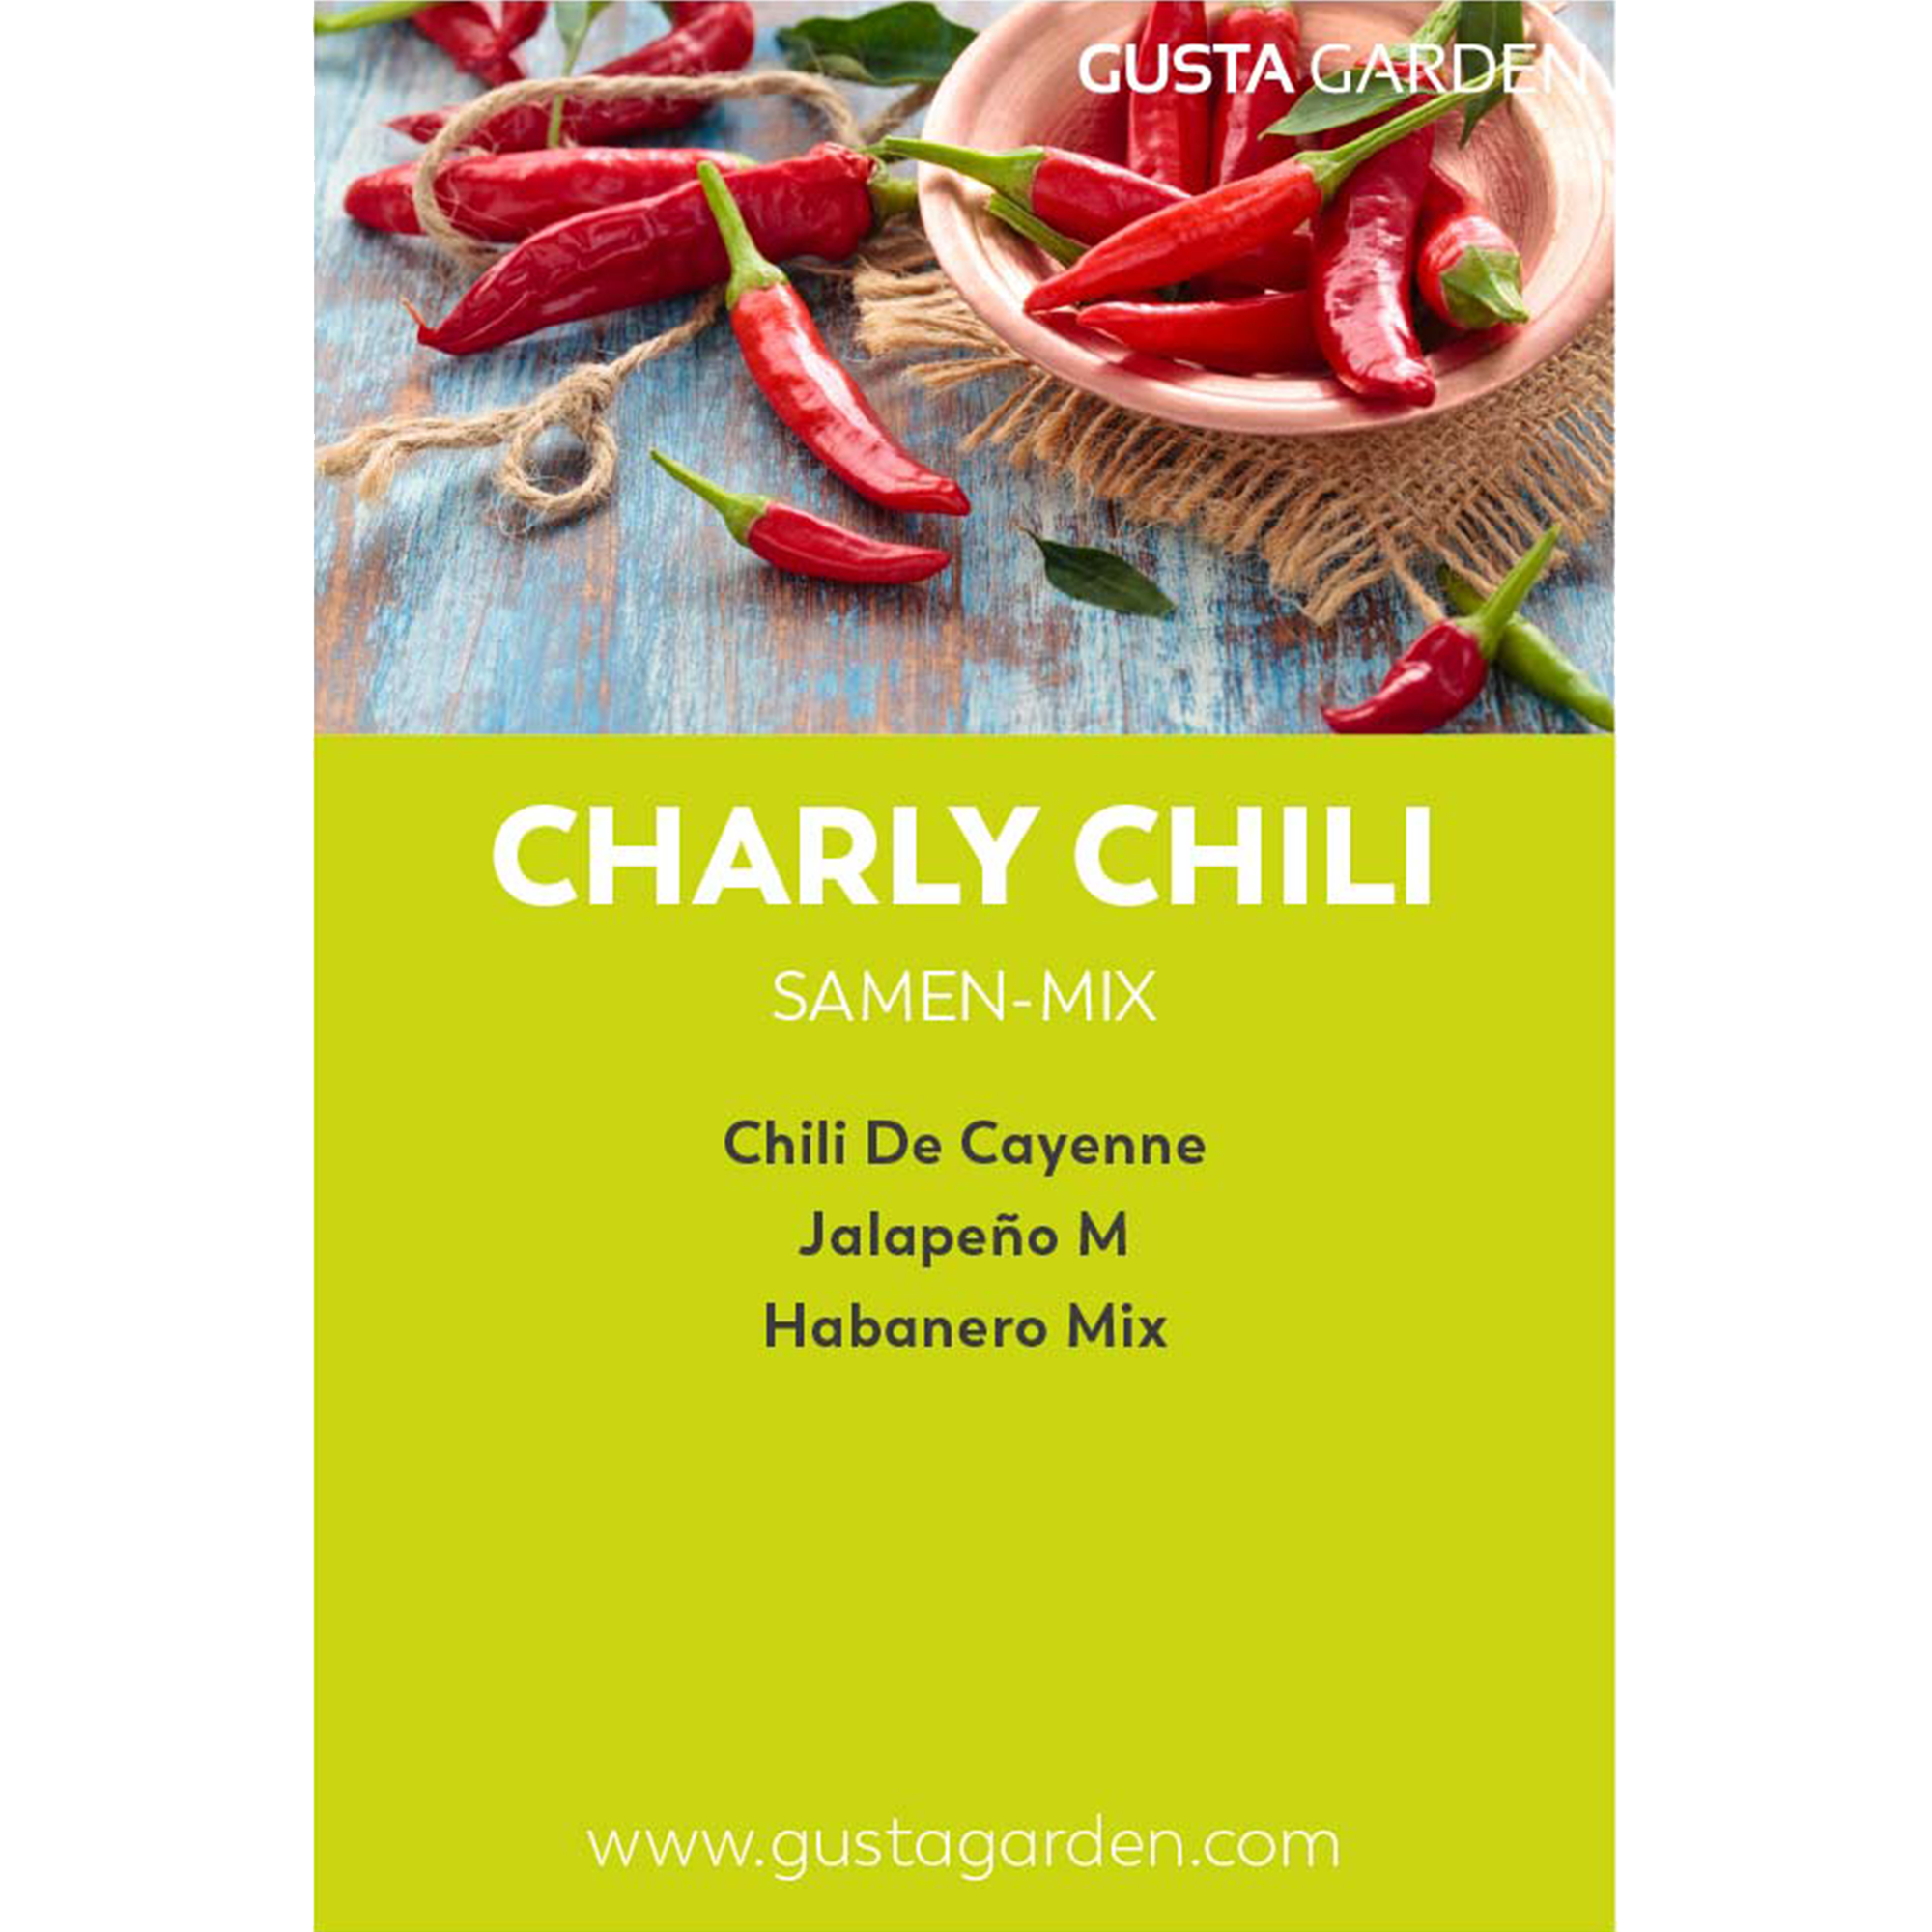 CHARLY CHILI seed mix